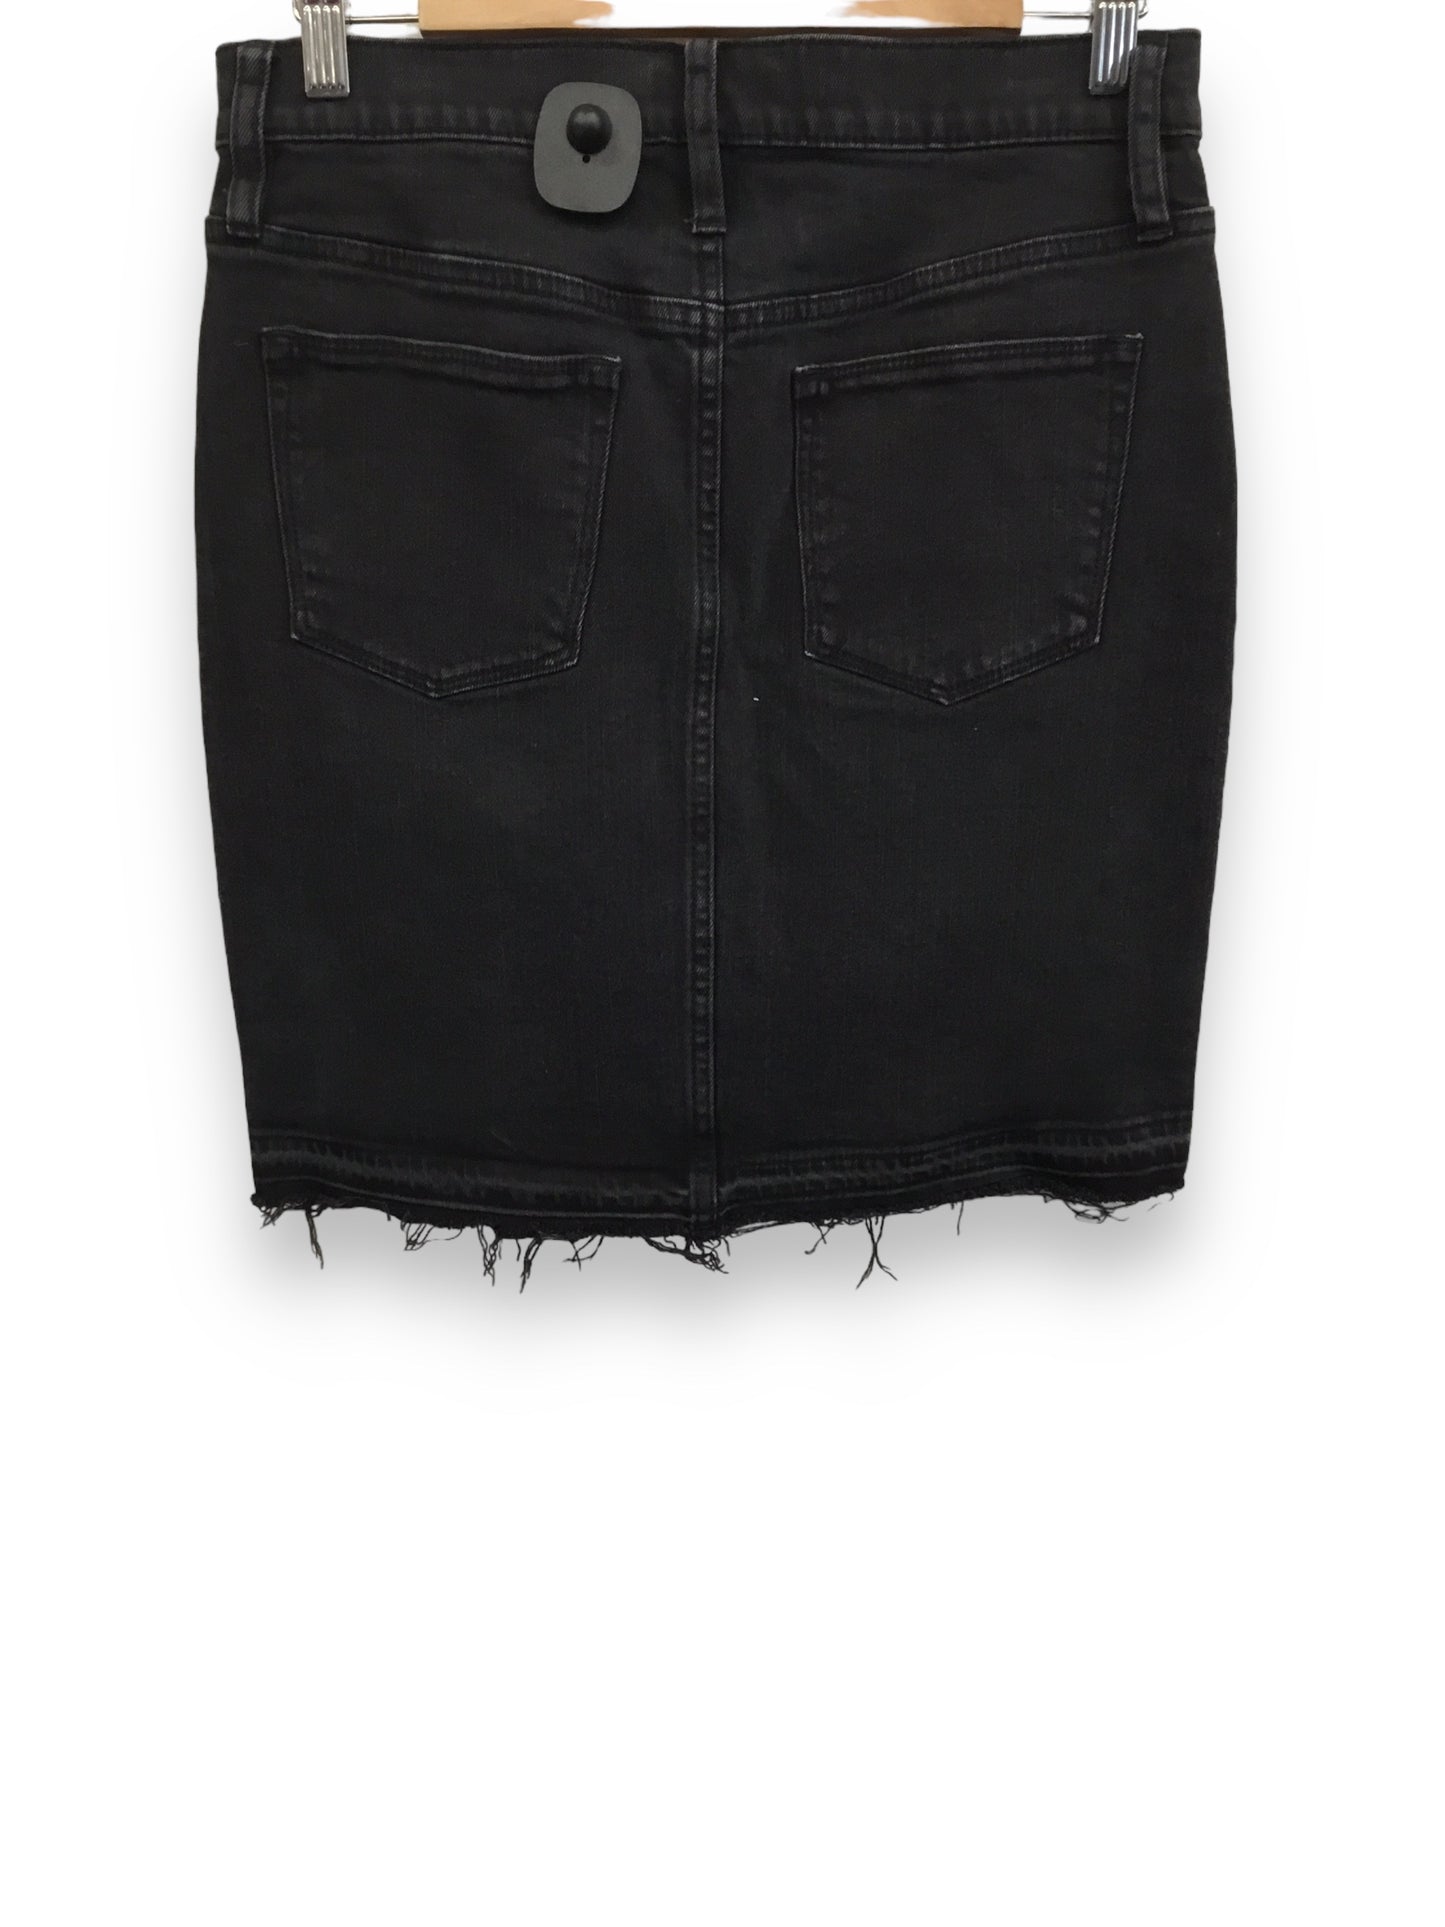 Skirt Mini & Short By J Crew  Size: 4petite